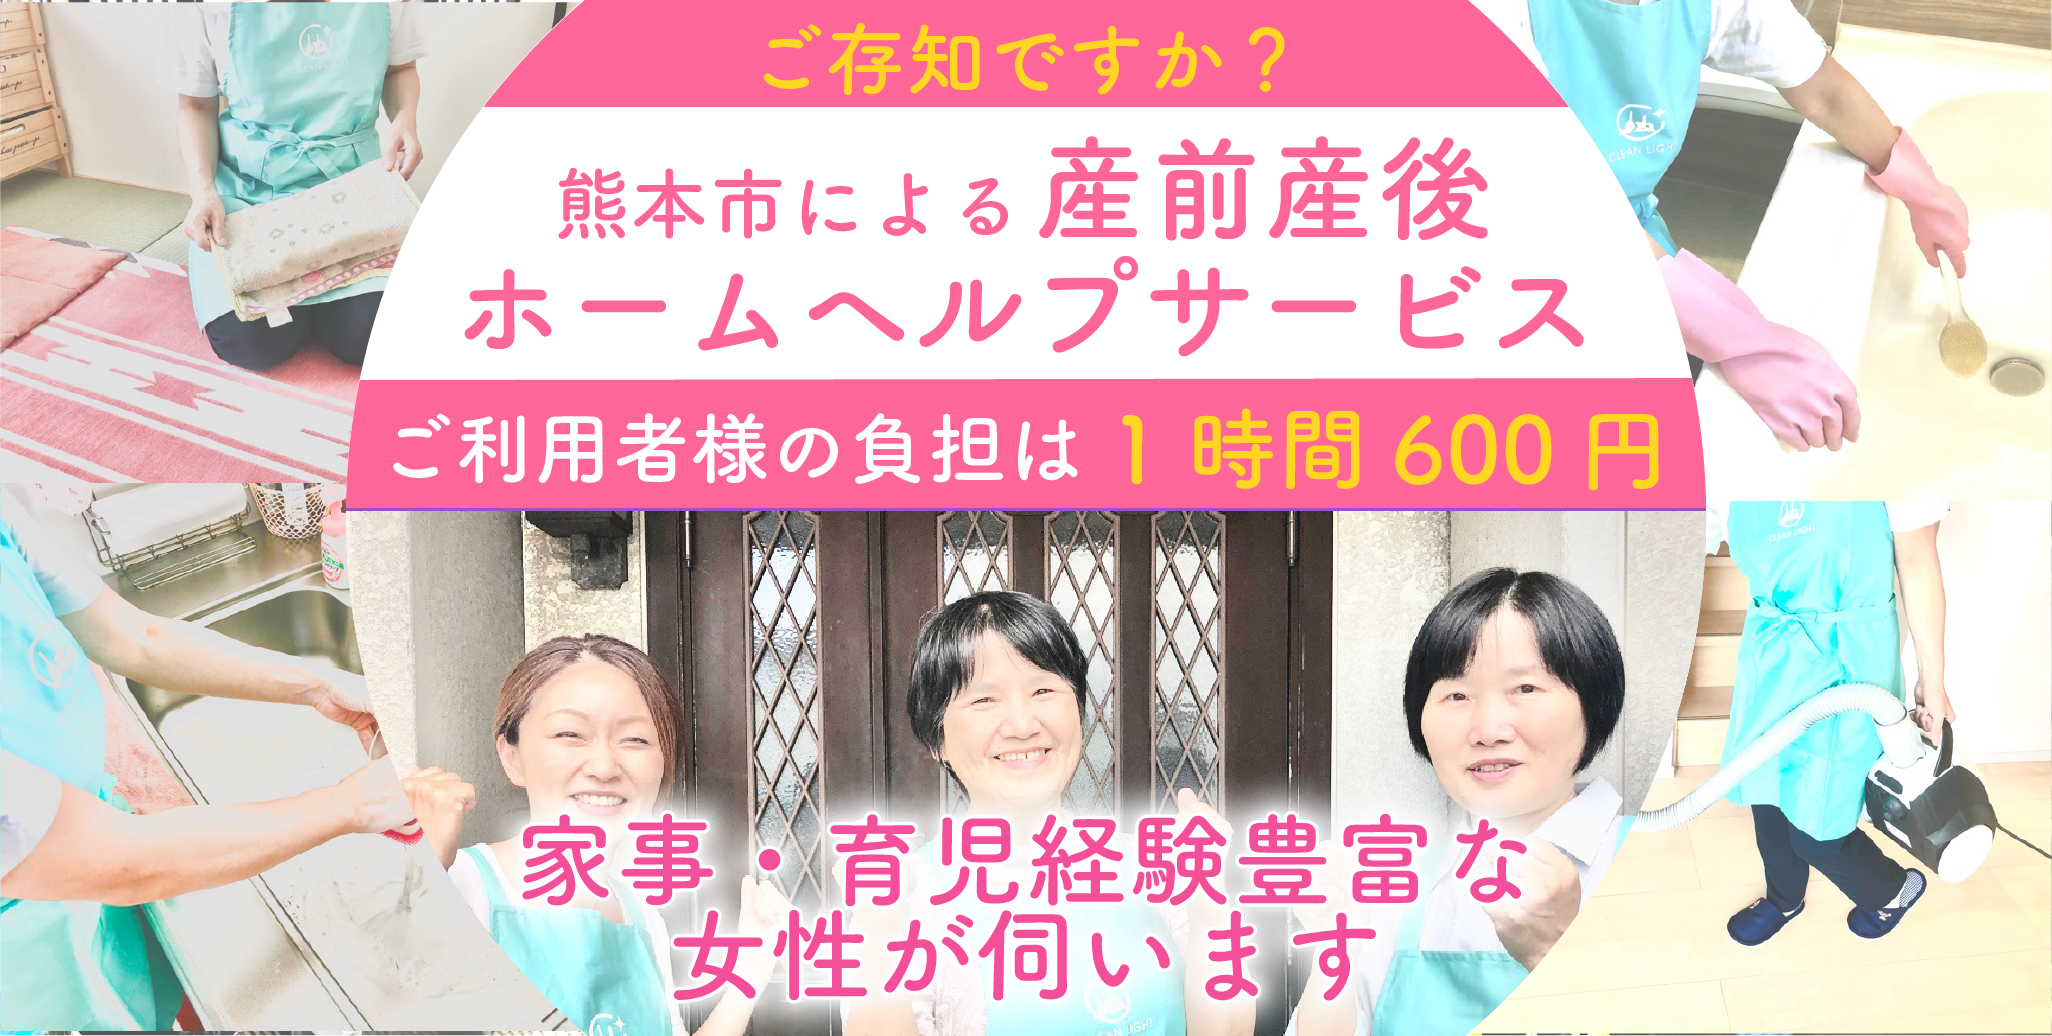 ご存知でしたか？
熊本市による産前産後ホームヘルプサービス
ご利用者様の負担は600円
家事・育児経験豊富な女性が伺います